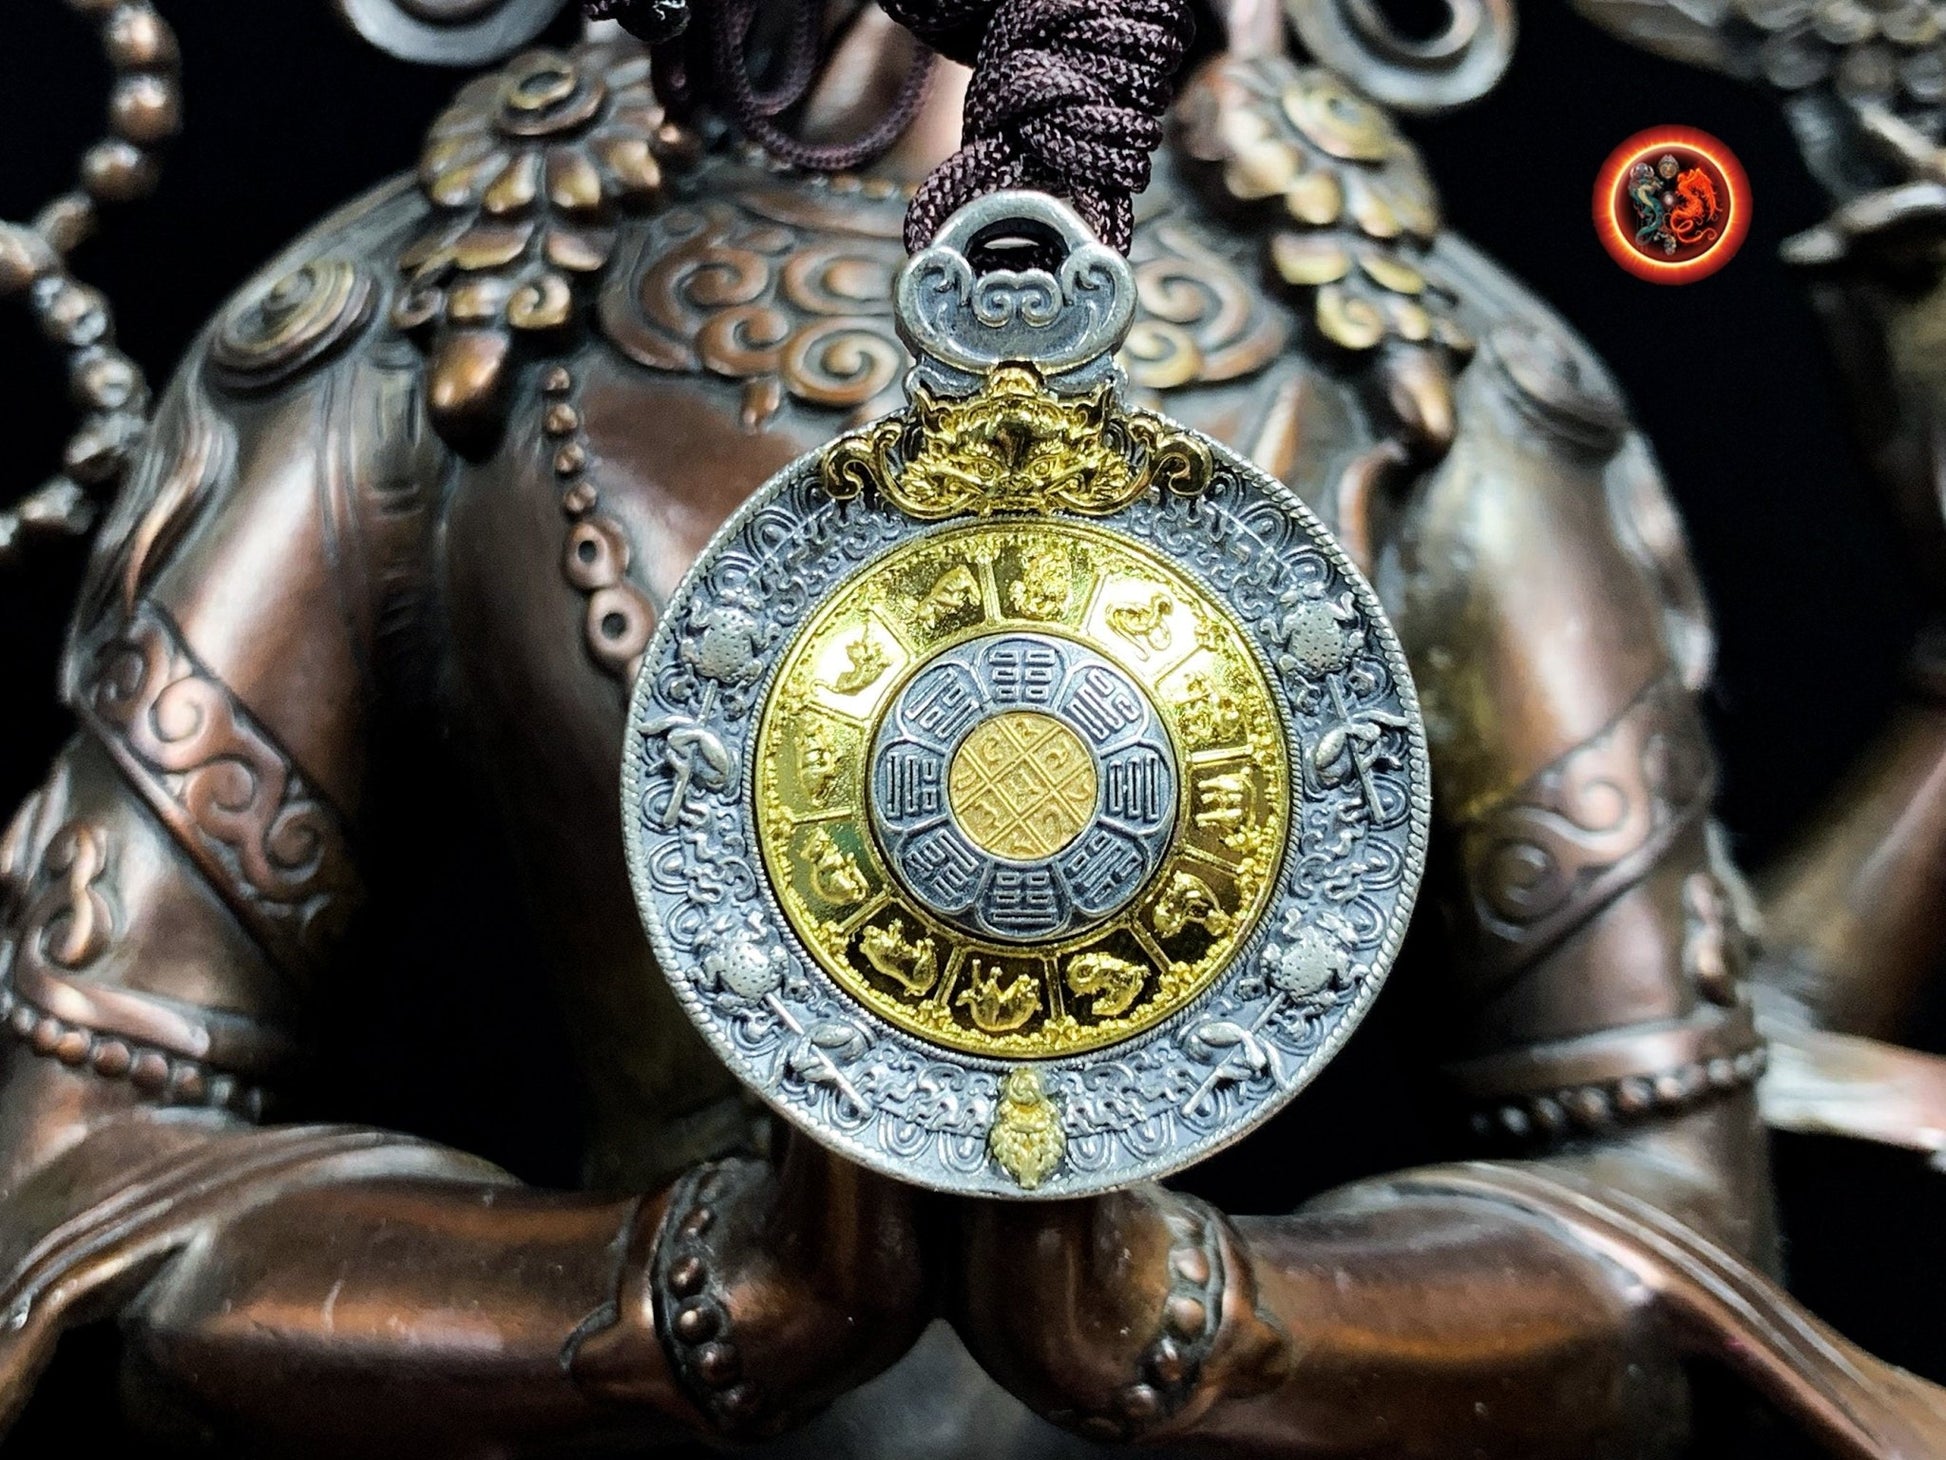 pendentif bouddhiste, tigle amulette tibetaine de protection. Argent 925 et cuivre. bagua, 8 symboles auspicieux du bouddhisme turquoise - obsidian dragon